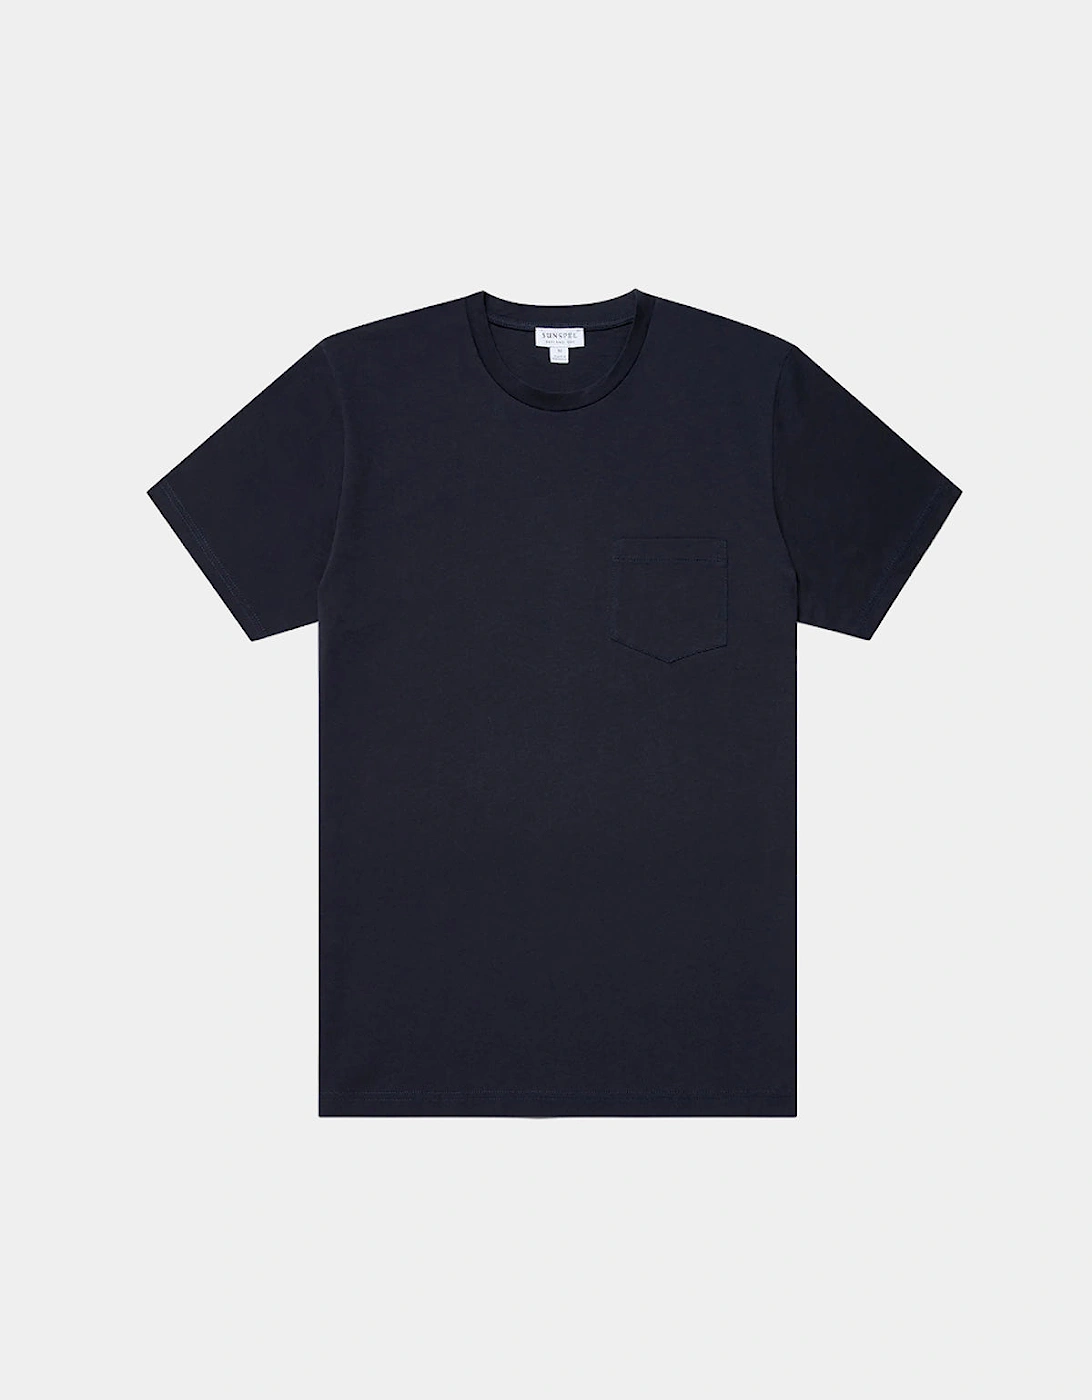 Riviera Pocket T-Shirt - Navy, 4 of 3